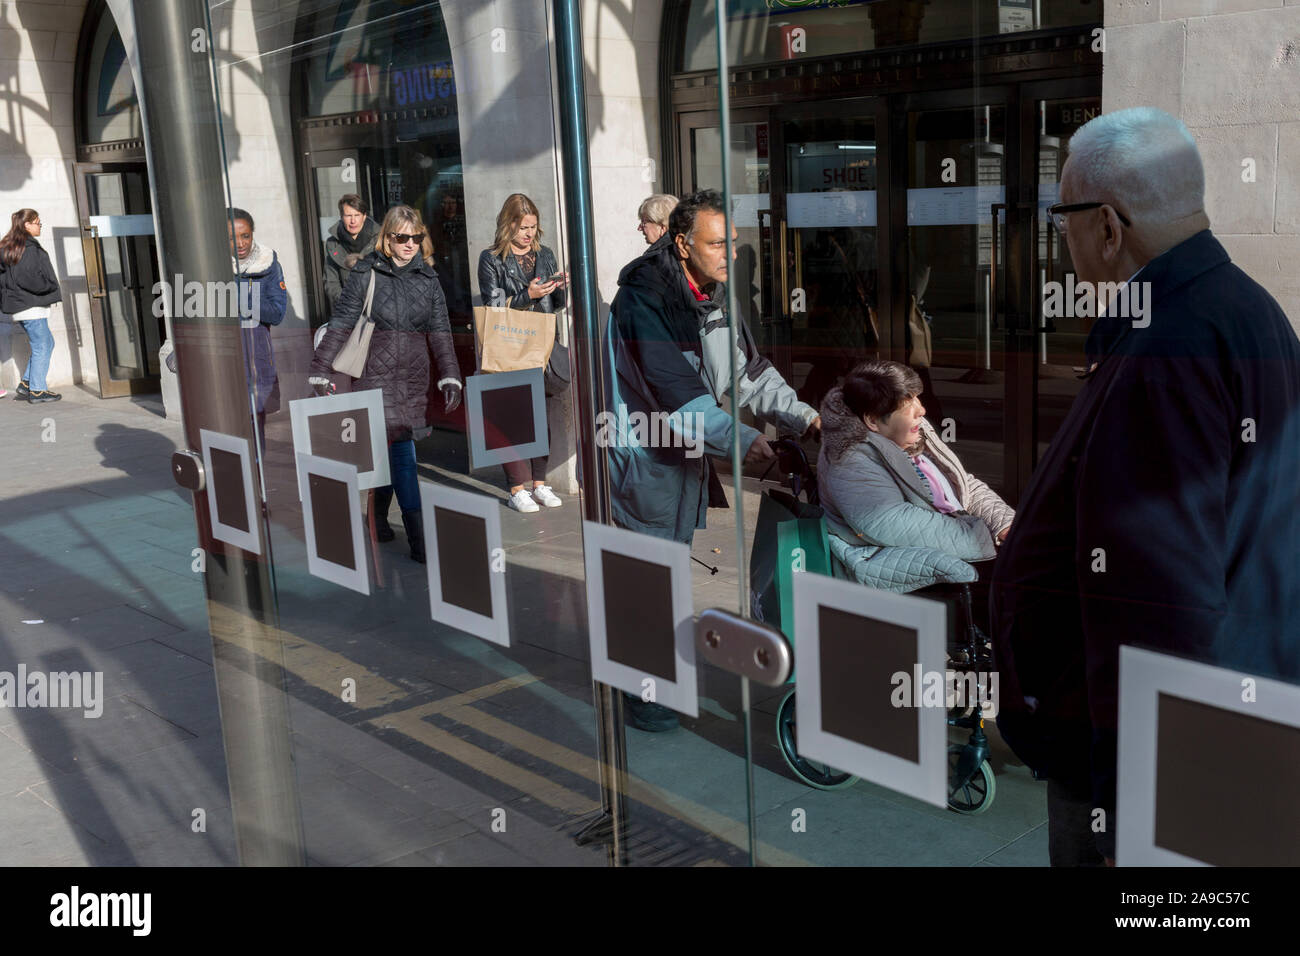 Les Londoniens attendre le prochain service bus à un arrêt de bus dans le centre-ville de Kingston, le 13 novembre 2019, à Londres, en Angleterre. Banque D'Images